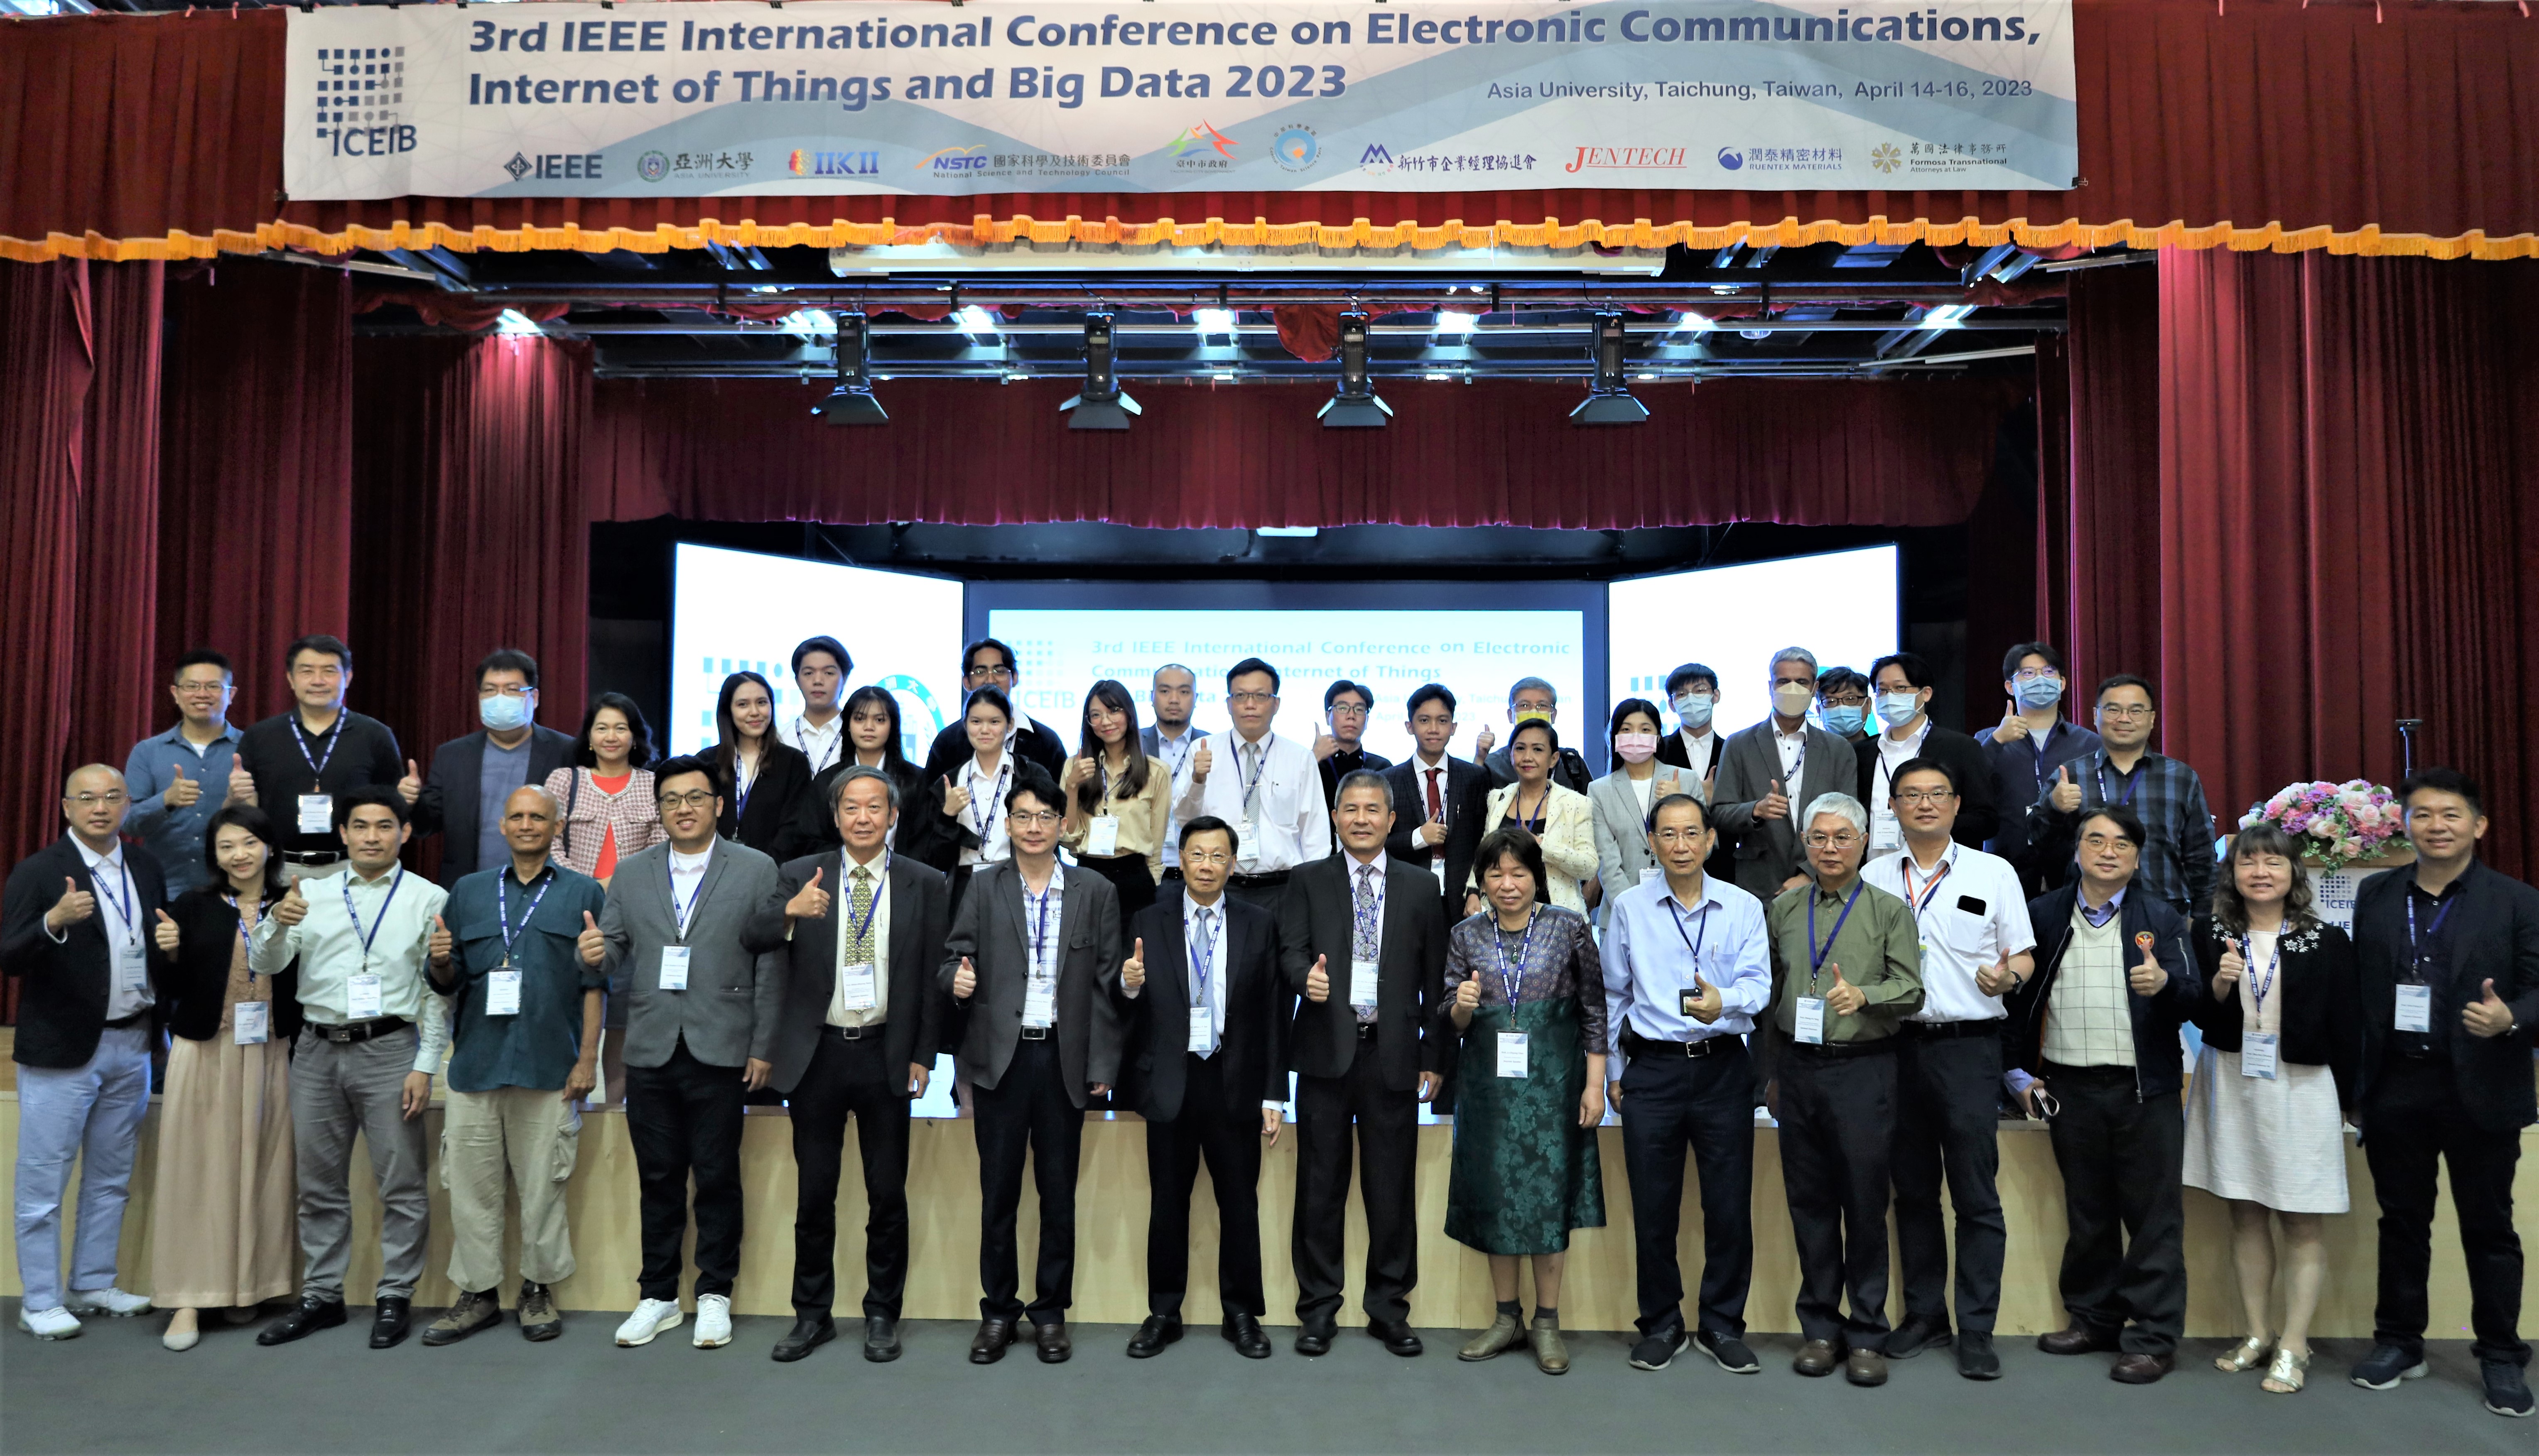 圖為「2023 IEEE ICEIB」電子通信、物聯網和大數據國際研討會，亞大校長蔡進發(左8)，和與會國內、國際學者和亞大老師合影。